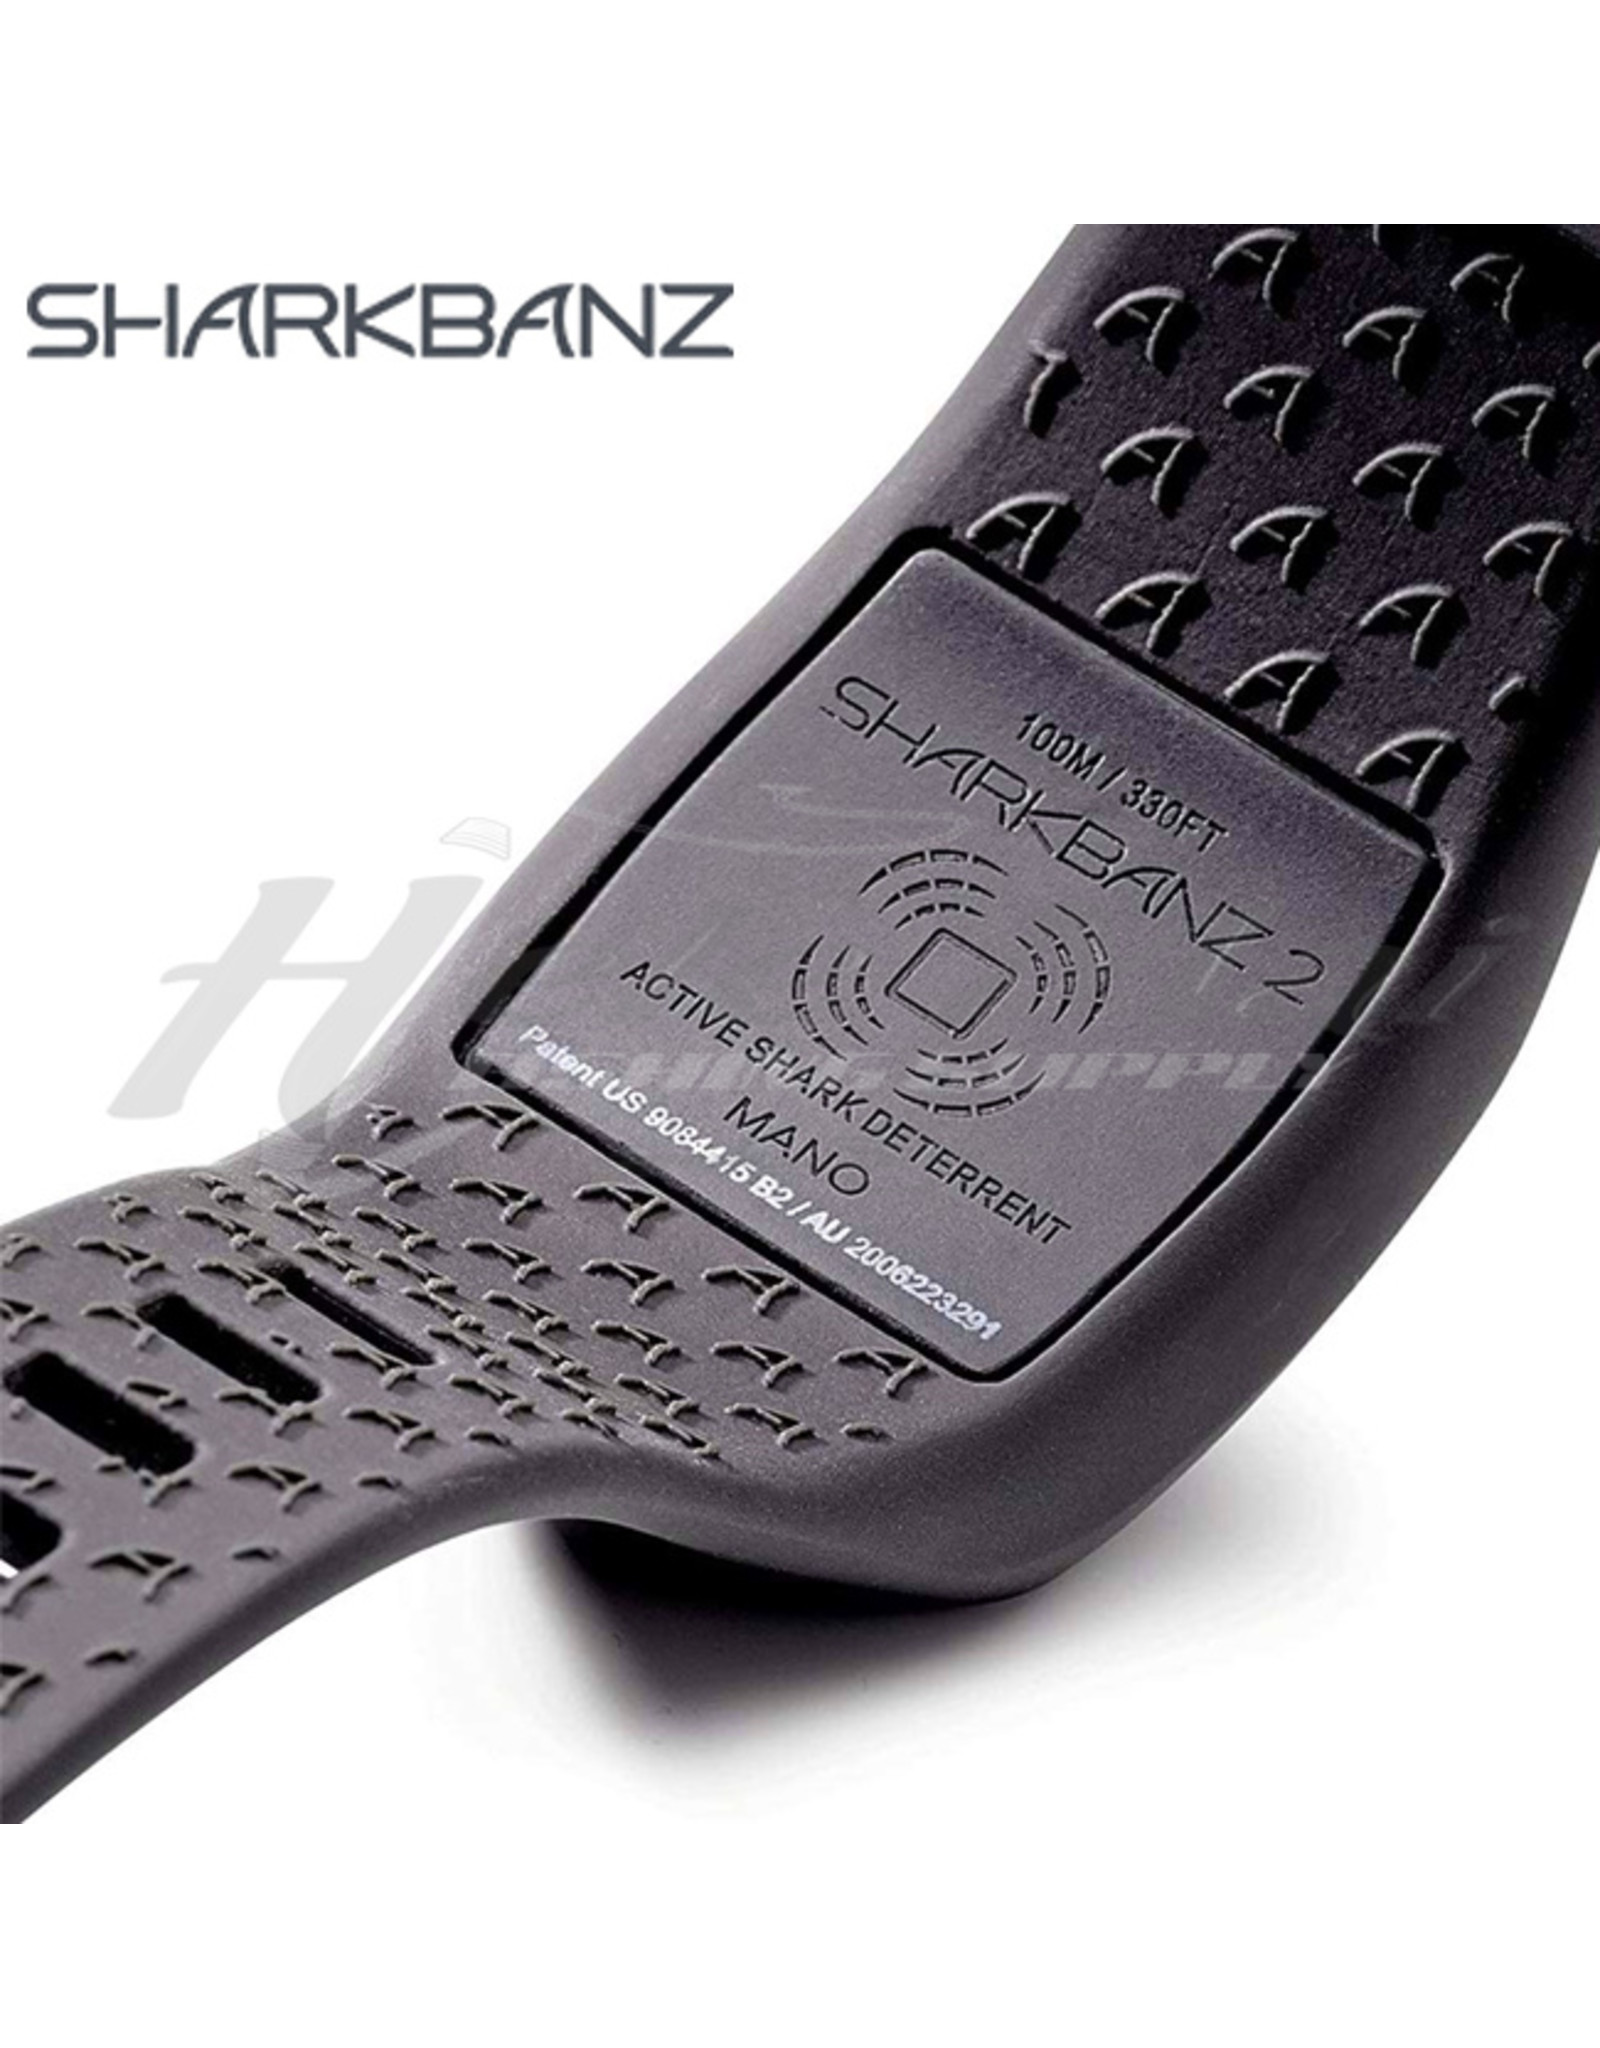 SHARKBANZ (SBZ) SHARKBANZ, ACTIVE SHARK DETERRANT BAND SLATE/AZURE